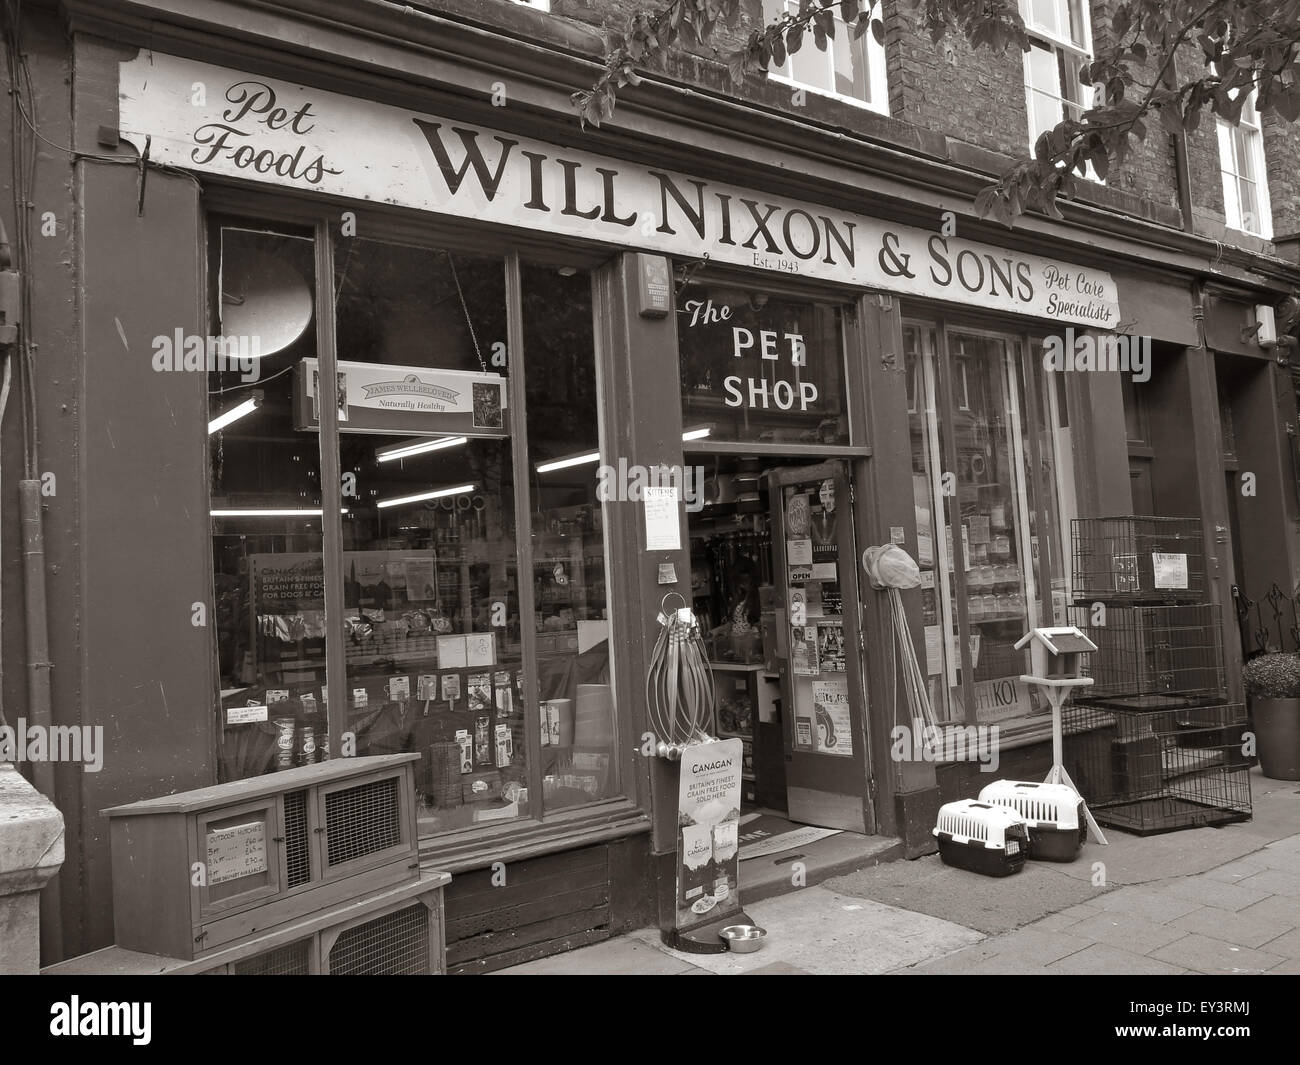 Nixon va et fils,Carlisle traditionnels pet shop,Cumbria, Angleterre, Royaume-Uni en monochrome Banque D'Images